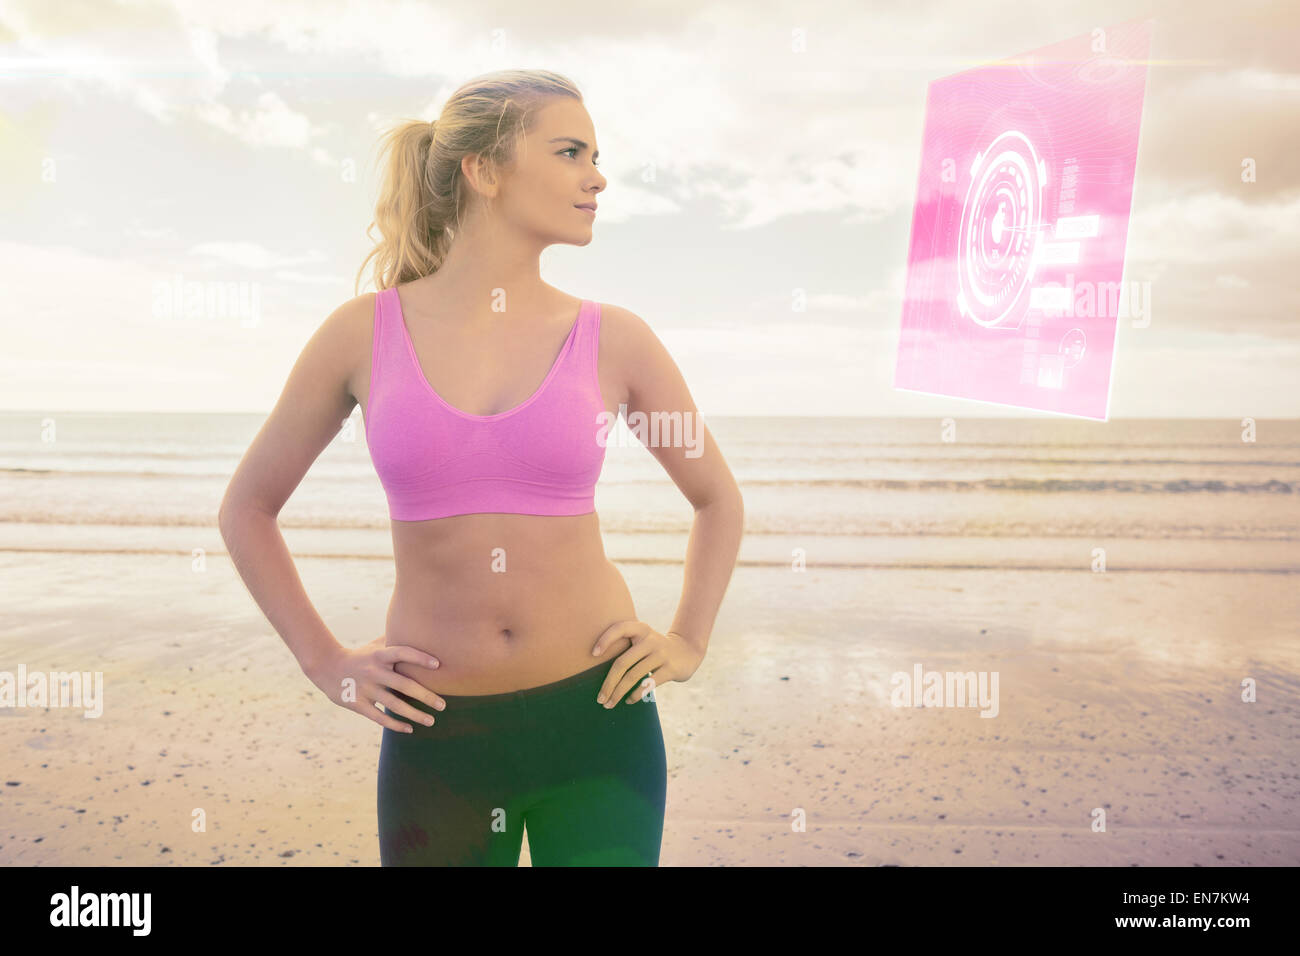 Immagine composita della tonica donna con le mani sui fianchi sulla spiaggia Foto Stock